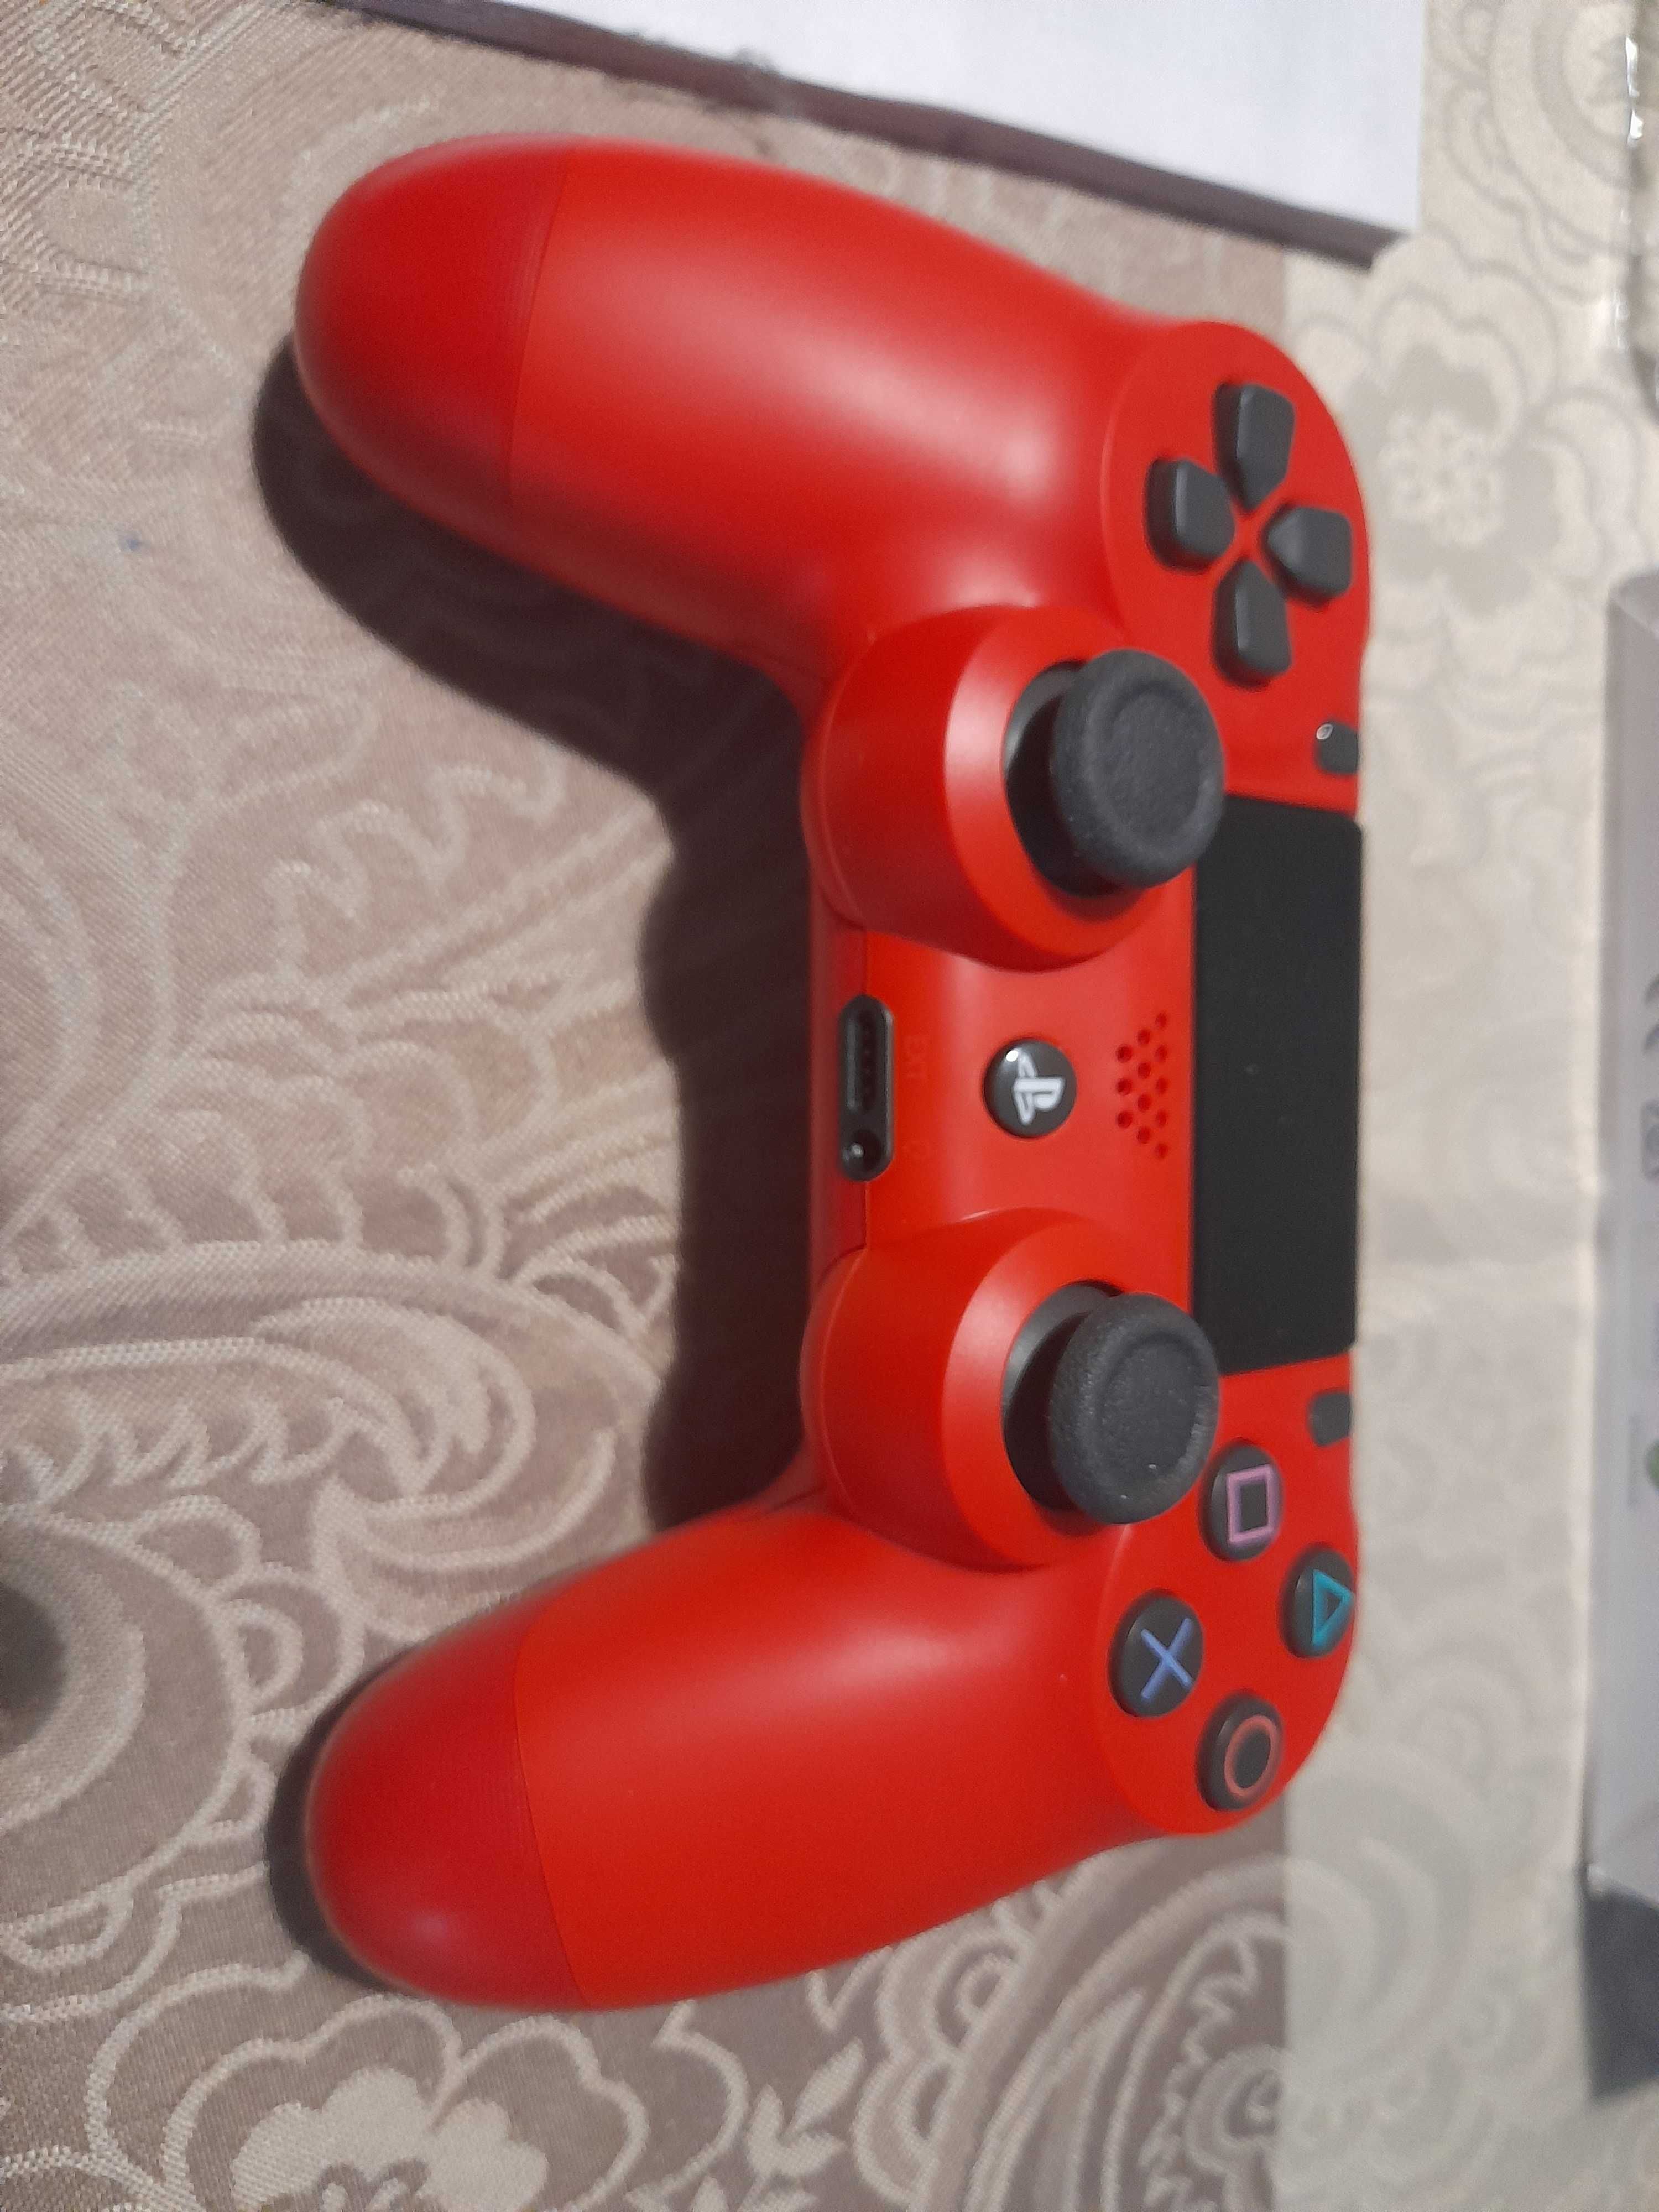 Pad bezprzewodowy do PS4 sony czerwony